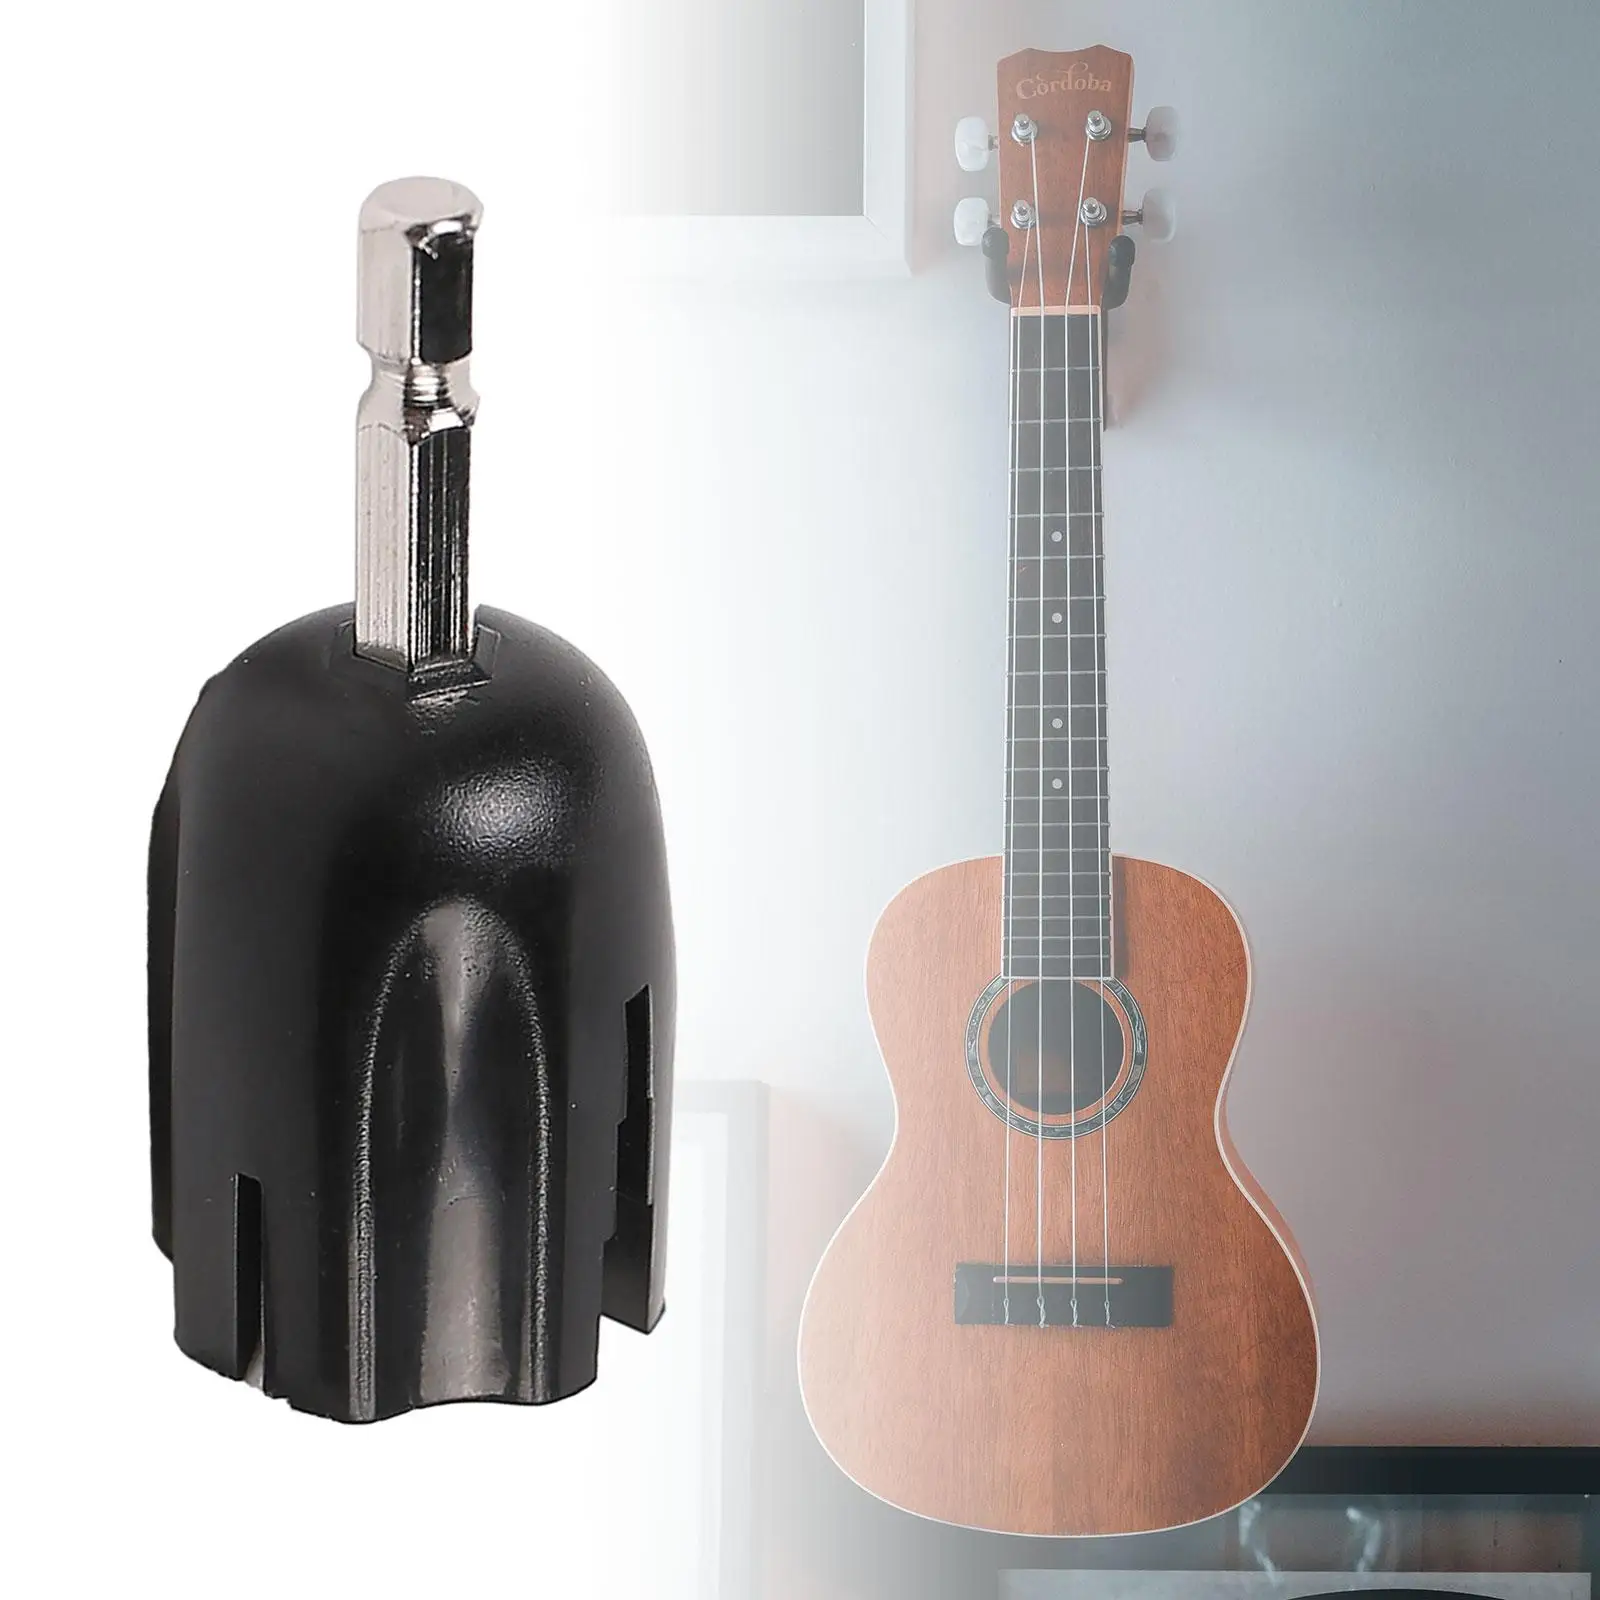 

Намотка для струн гитары, инструмент «сделай сам», инструмент для ремонта, шестигранная электрическая дрель, инструмент для настройки, многофункциональный приспособление для акустической гитары